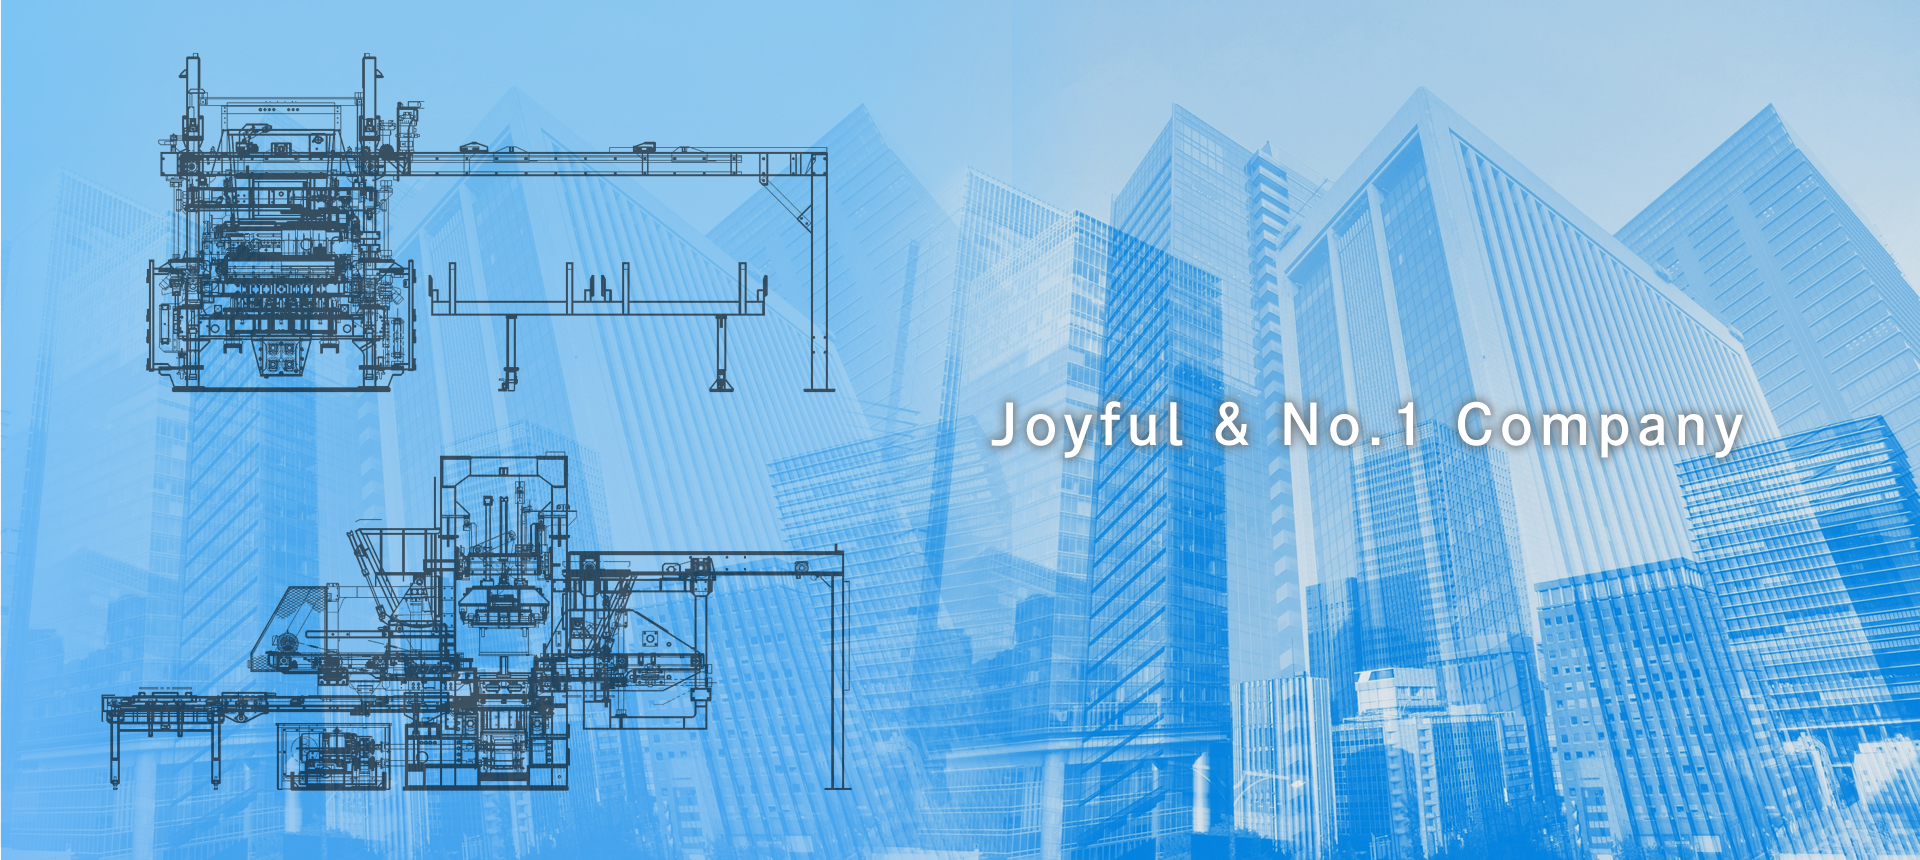 Joyful & No.1 Company